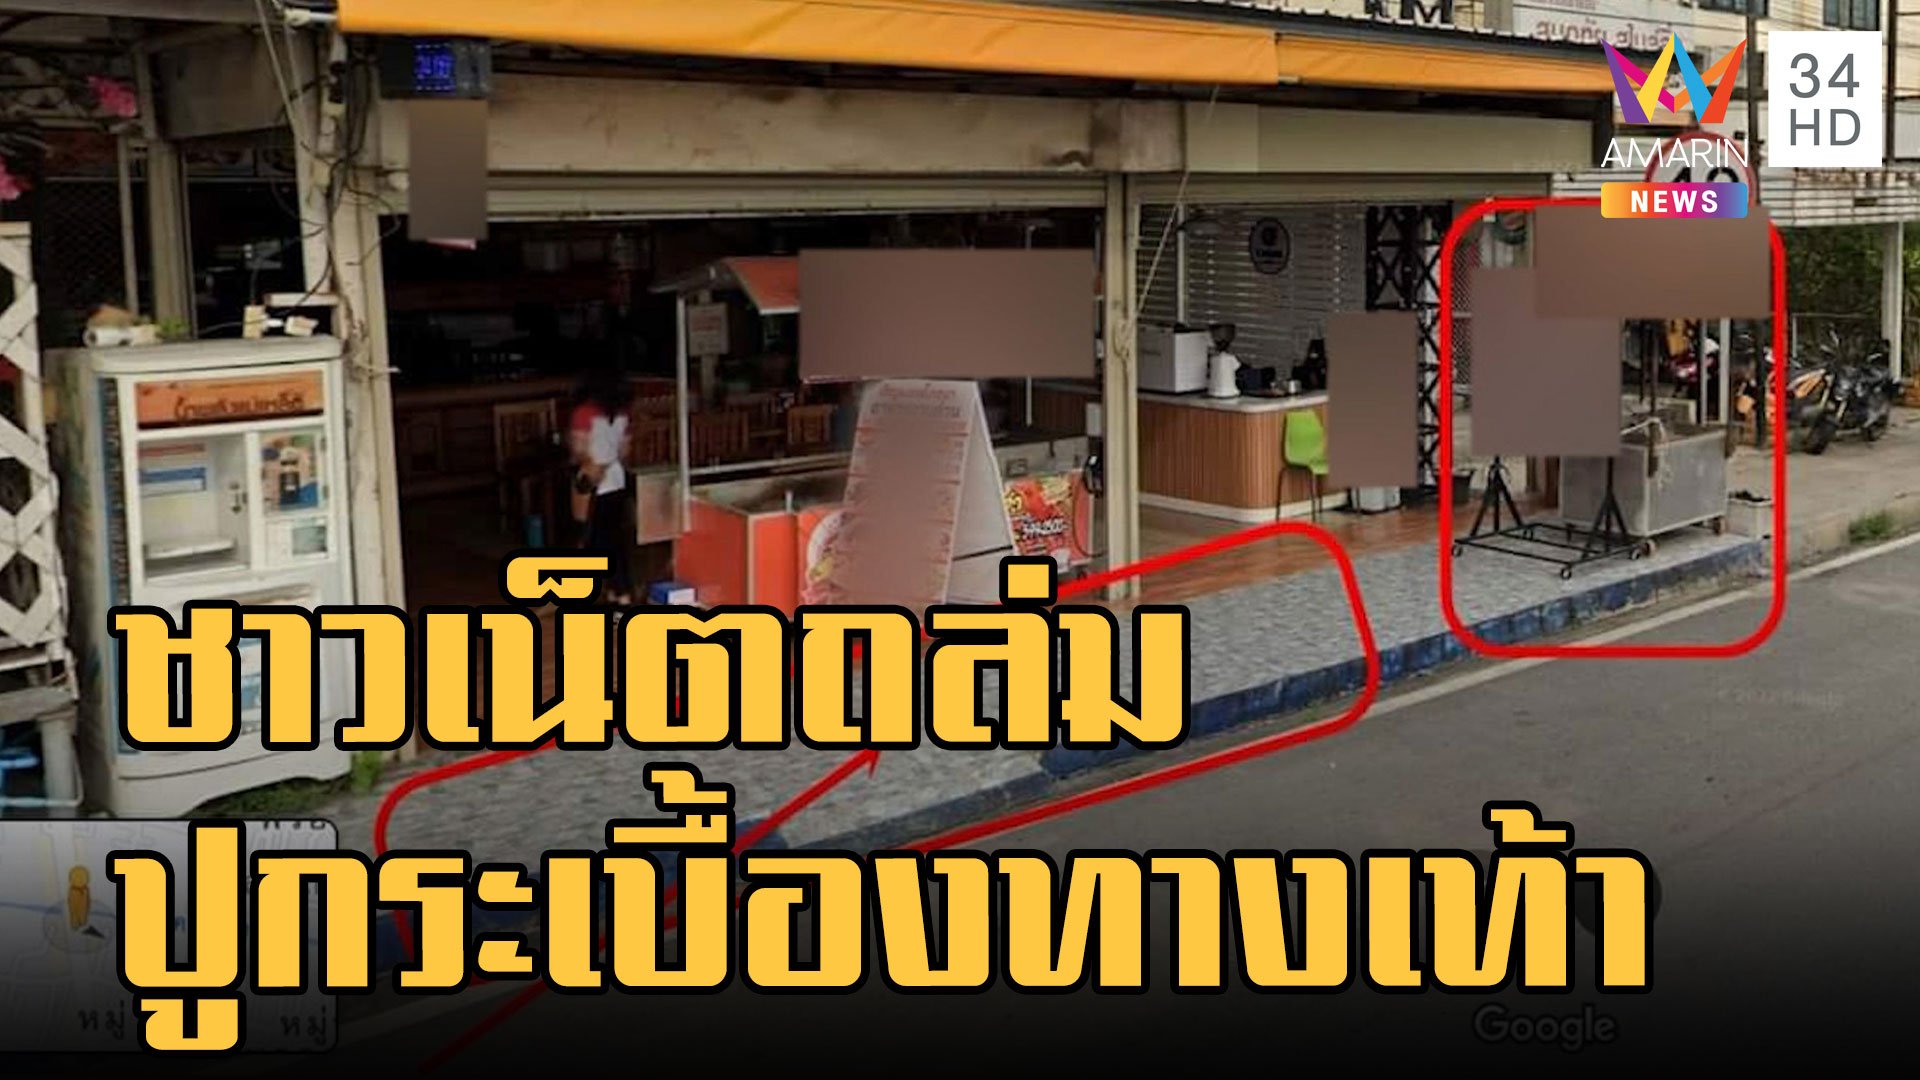 ชาวเน็ตถล่มยับ ร้านอาหารปูกระเบื้องยึดทางเท้า | ข่าวเที่ยงอมรินทร์ | 3 ต.ค. 65 | AMARIN TVHD34